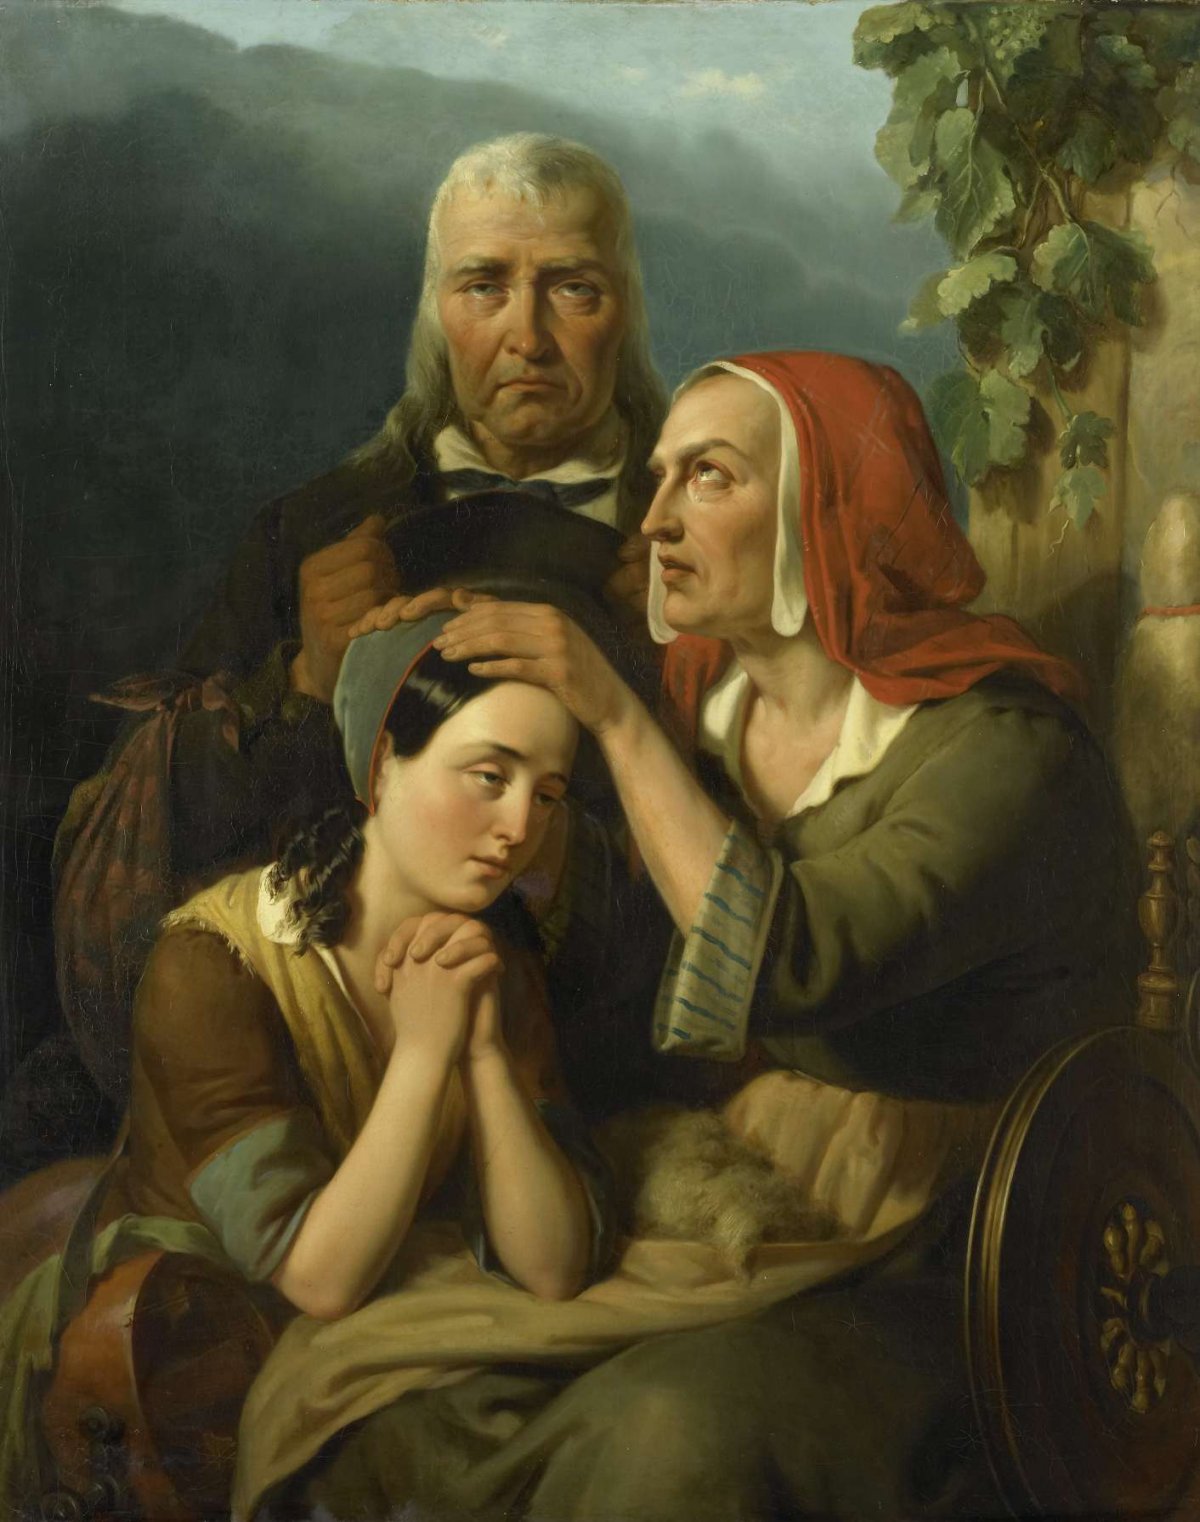 'A Mother's Blessing', Moritz Calisch, 1844